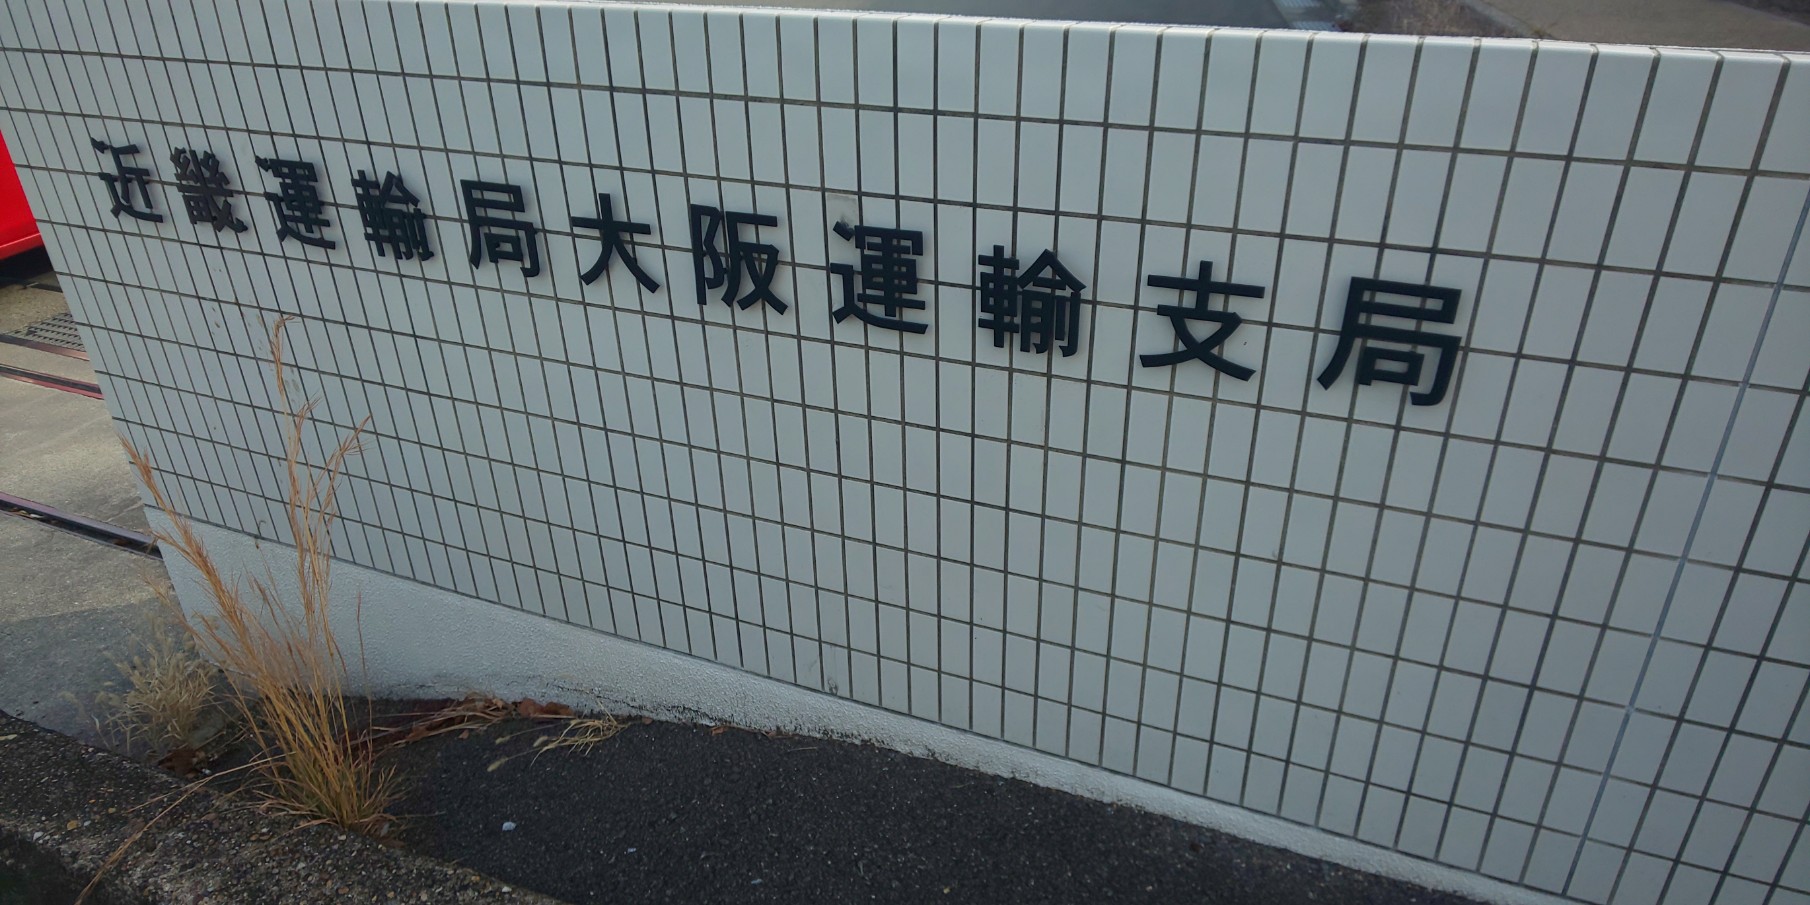 大阪運輸支局